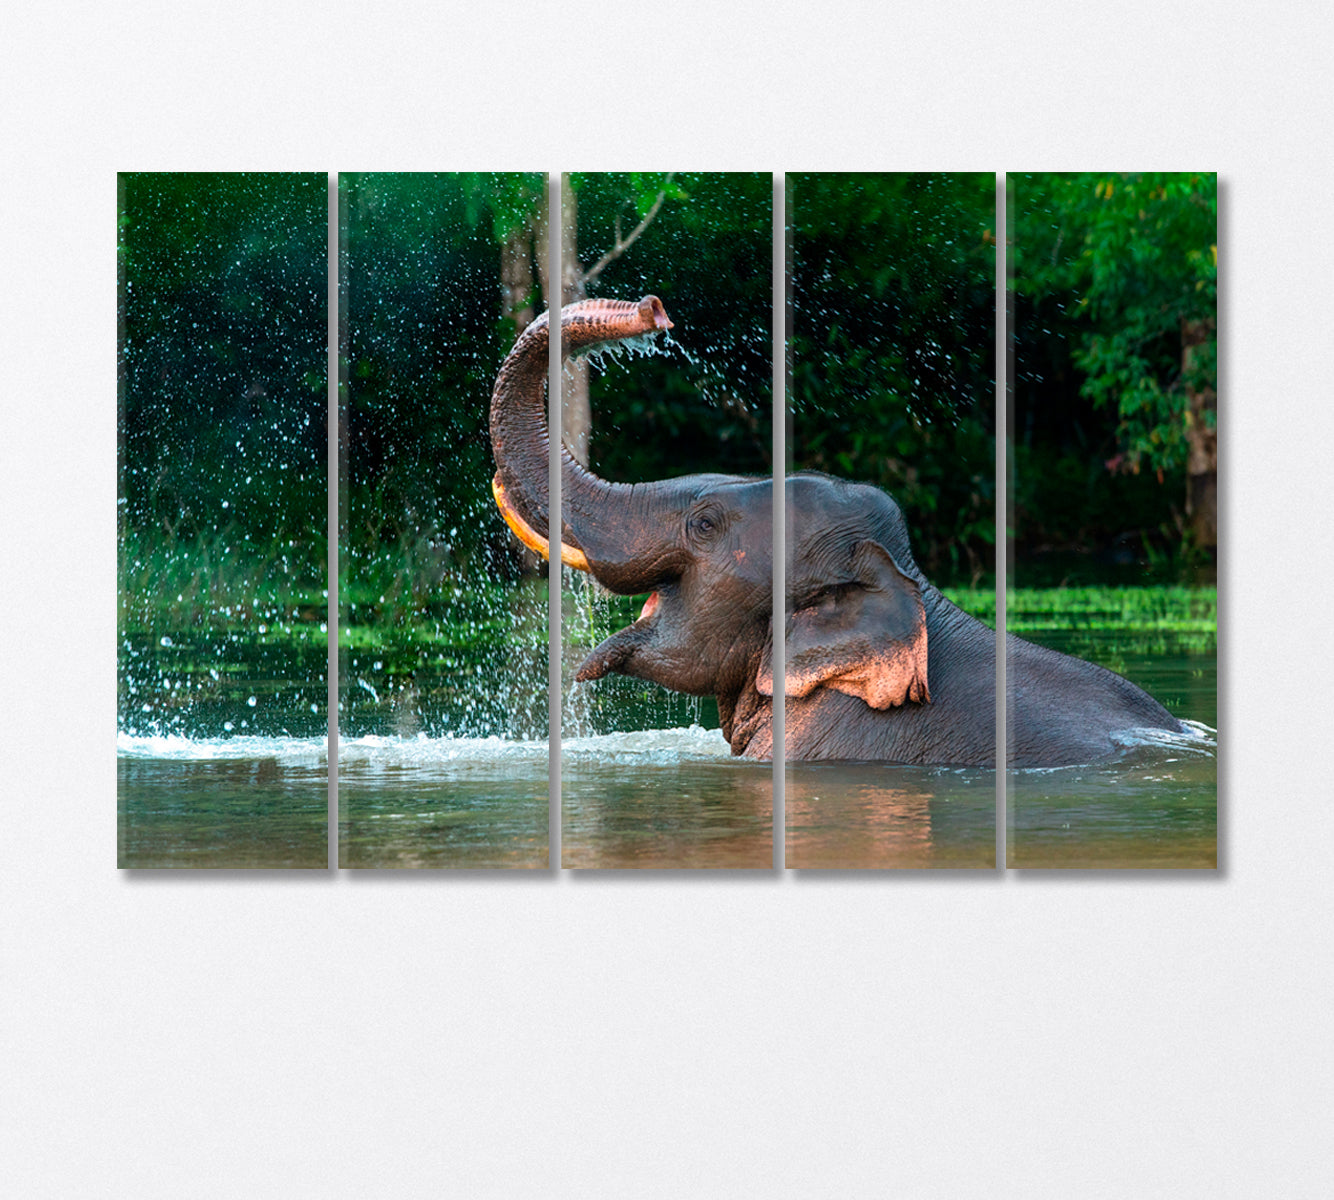 Asian Elephant Enjoying a Bath Canvas Print-Canvas Print-CetArt-5 Panels-36x24 inches-CetArt